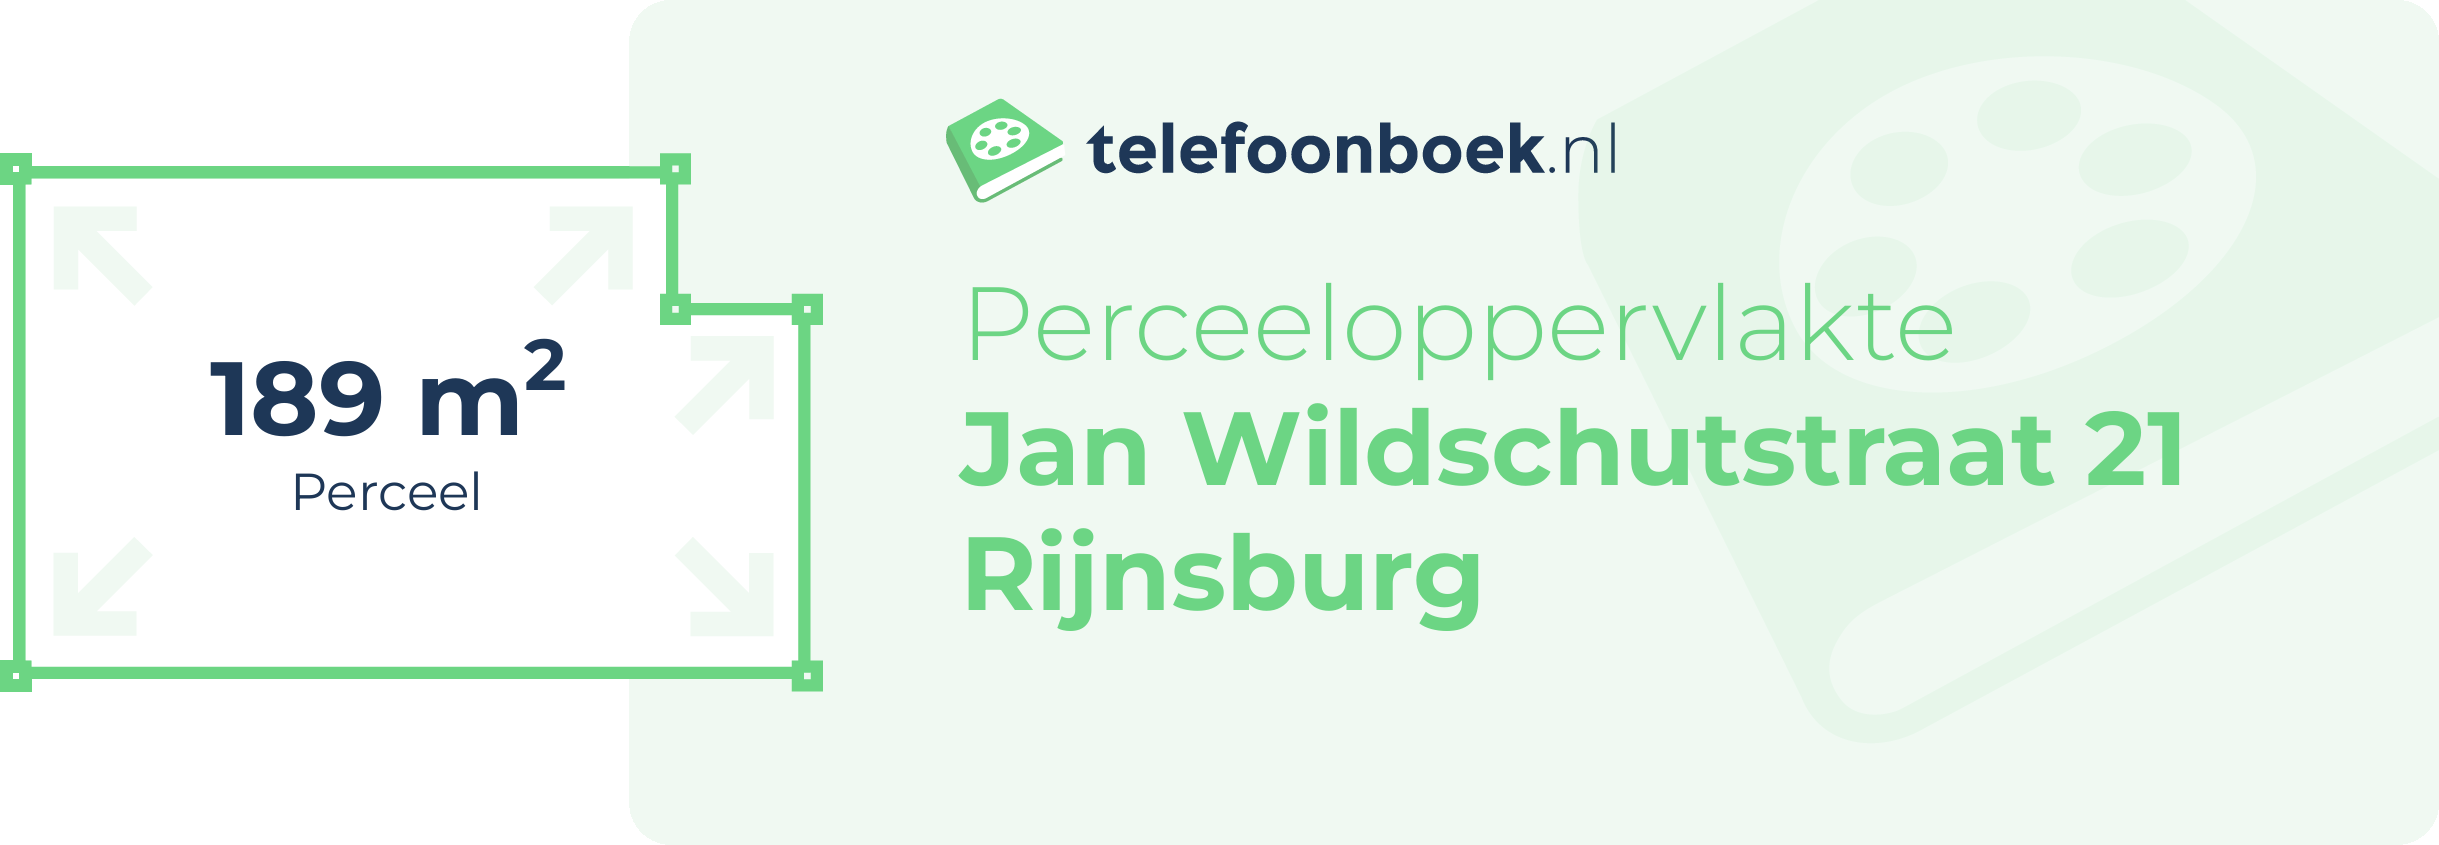 Perceeloppervlakte Jan Wildschutstraat 21 Rijnsburg